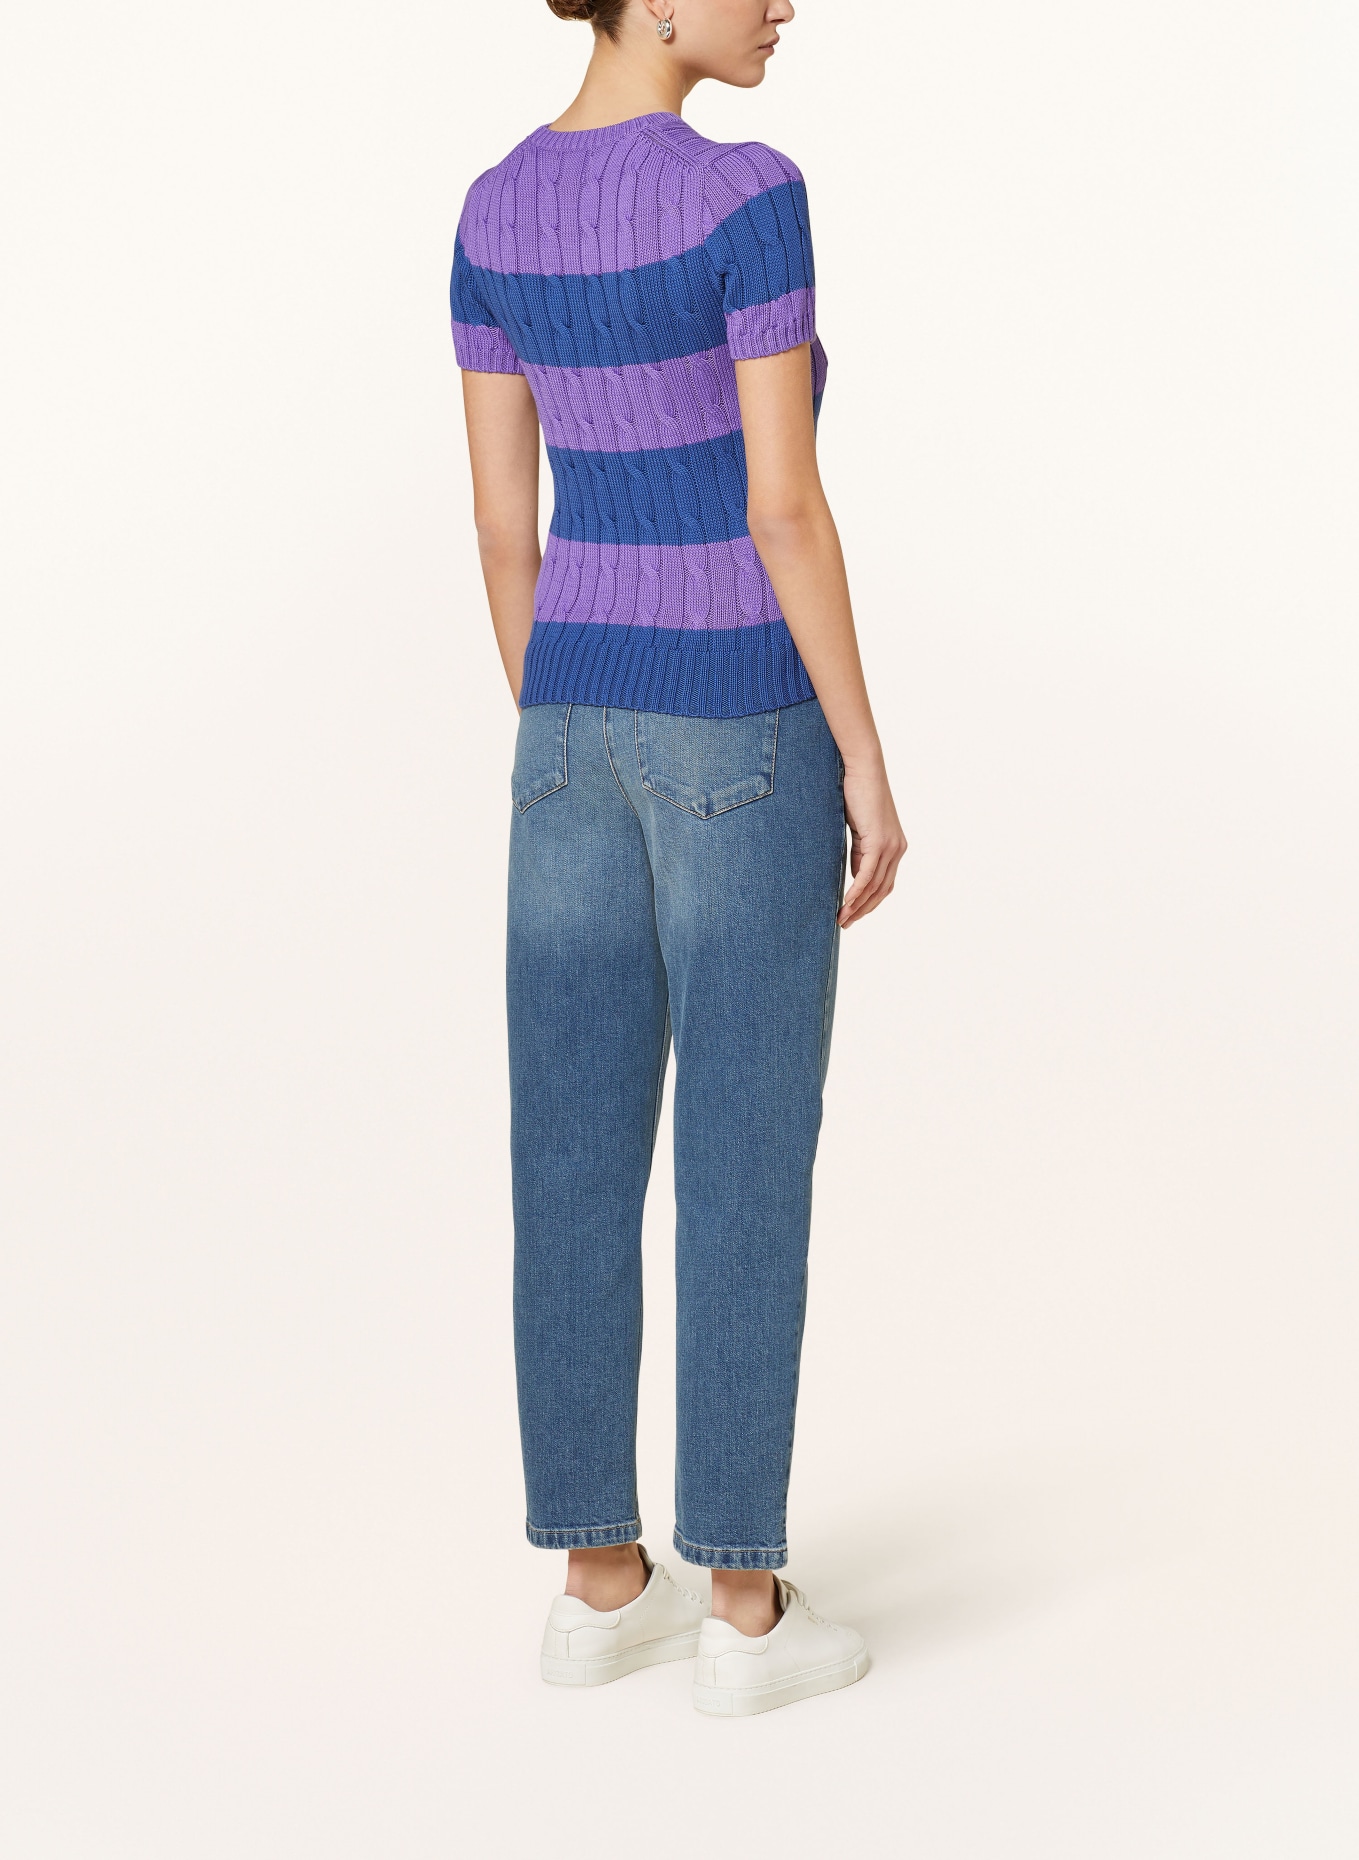 POLO RALPH LAUREN Knit shirt, Color: PURPLE/ DARK BLUE (Image 3)